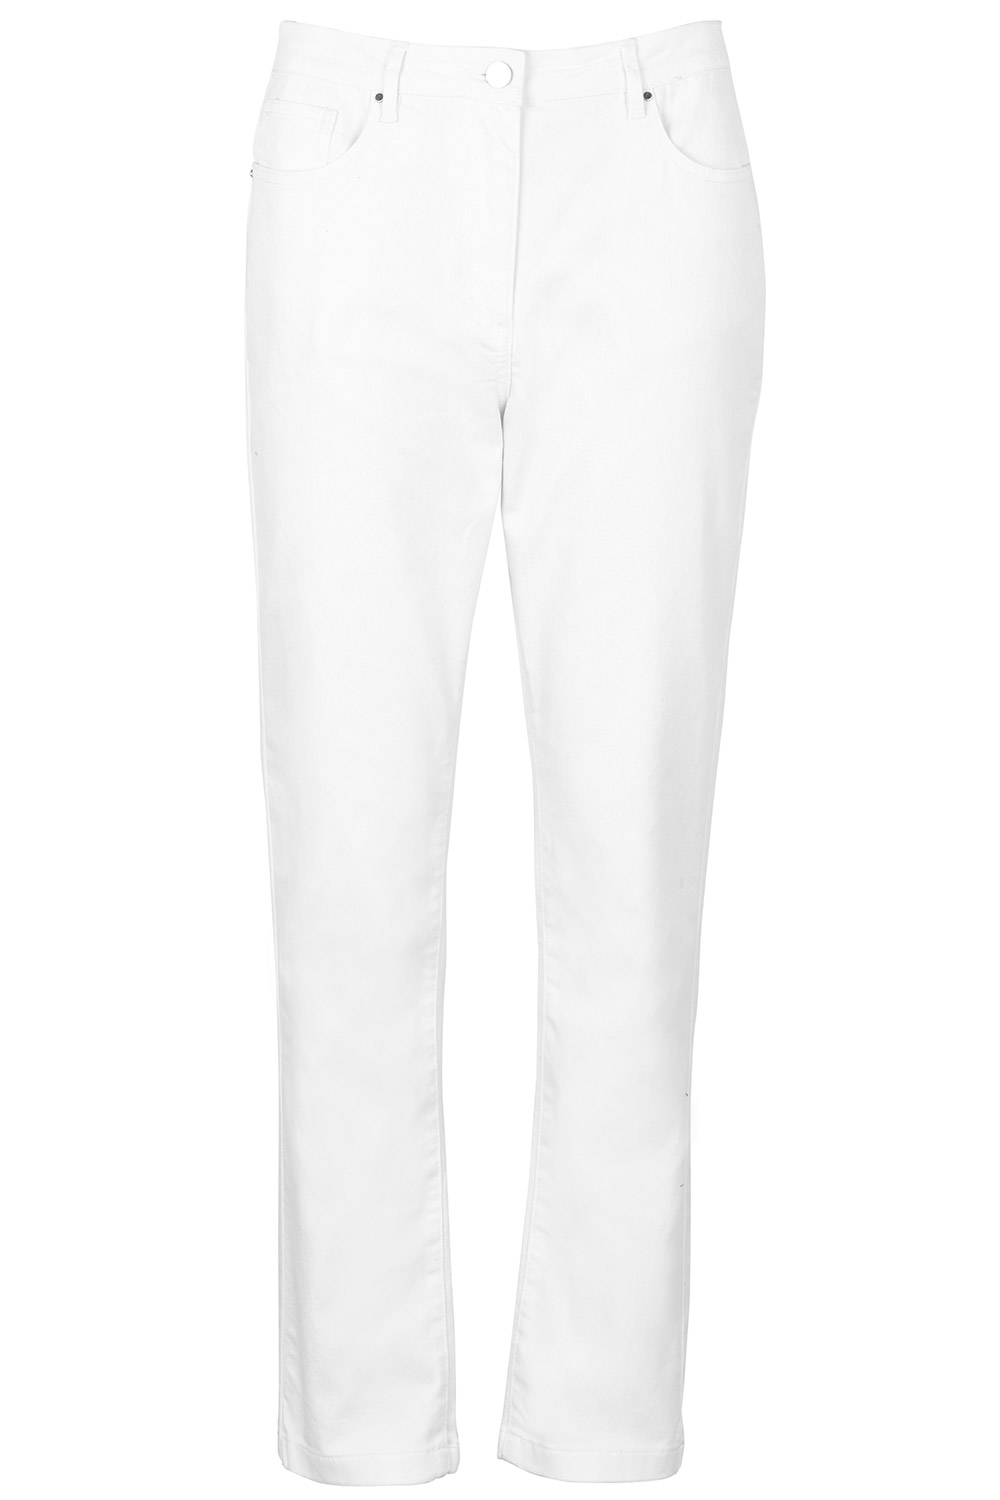 bonmarche white jeans